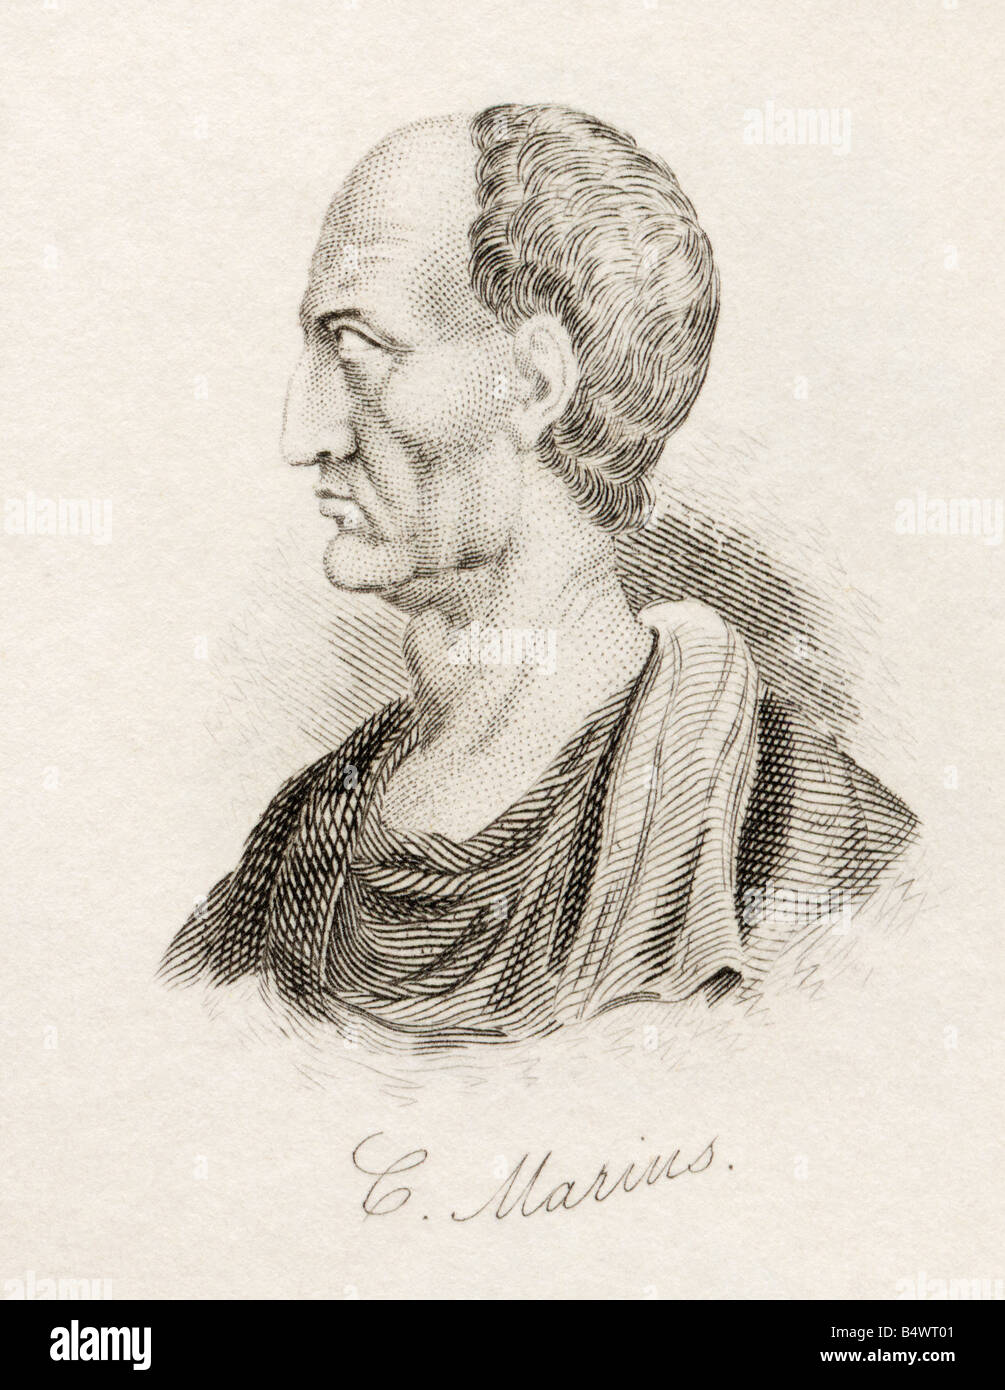 Gaius Marius, 157 BC - 86 BC. Général romain et homme politique. Tiré du livre Crabbs Historical Dictionary, publié en 1825. Banque D'Images